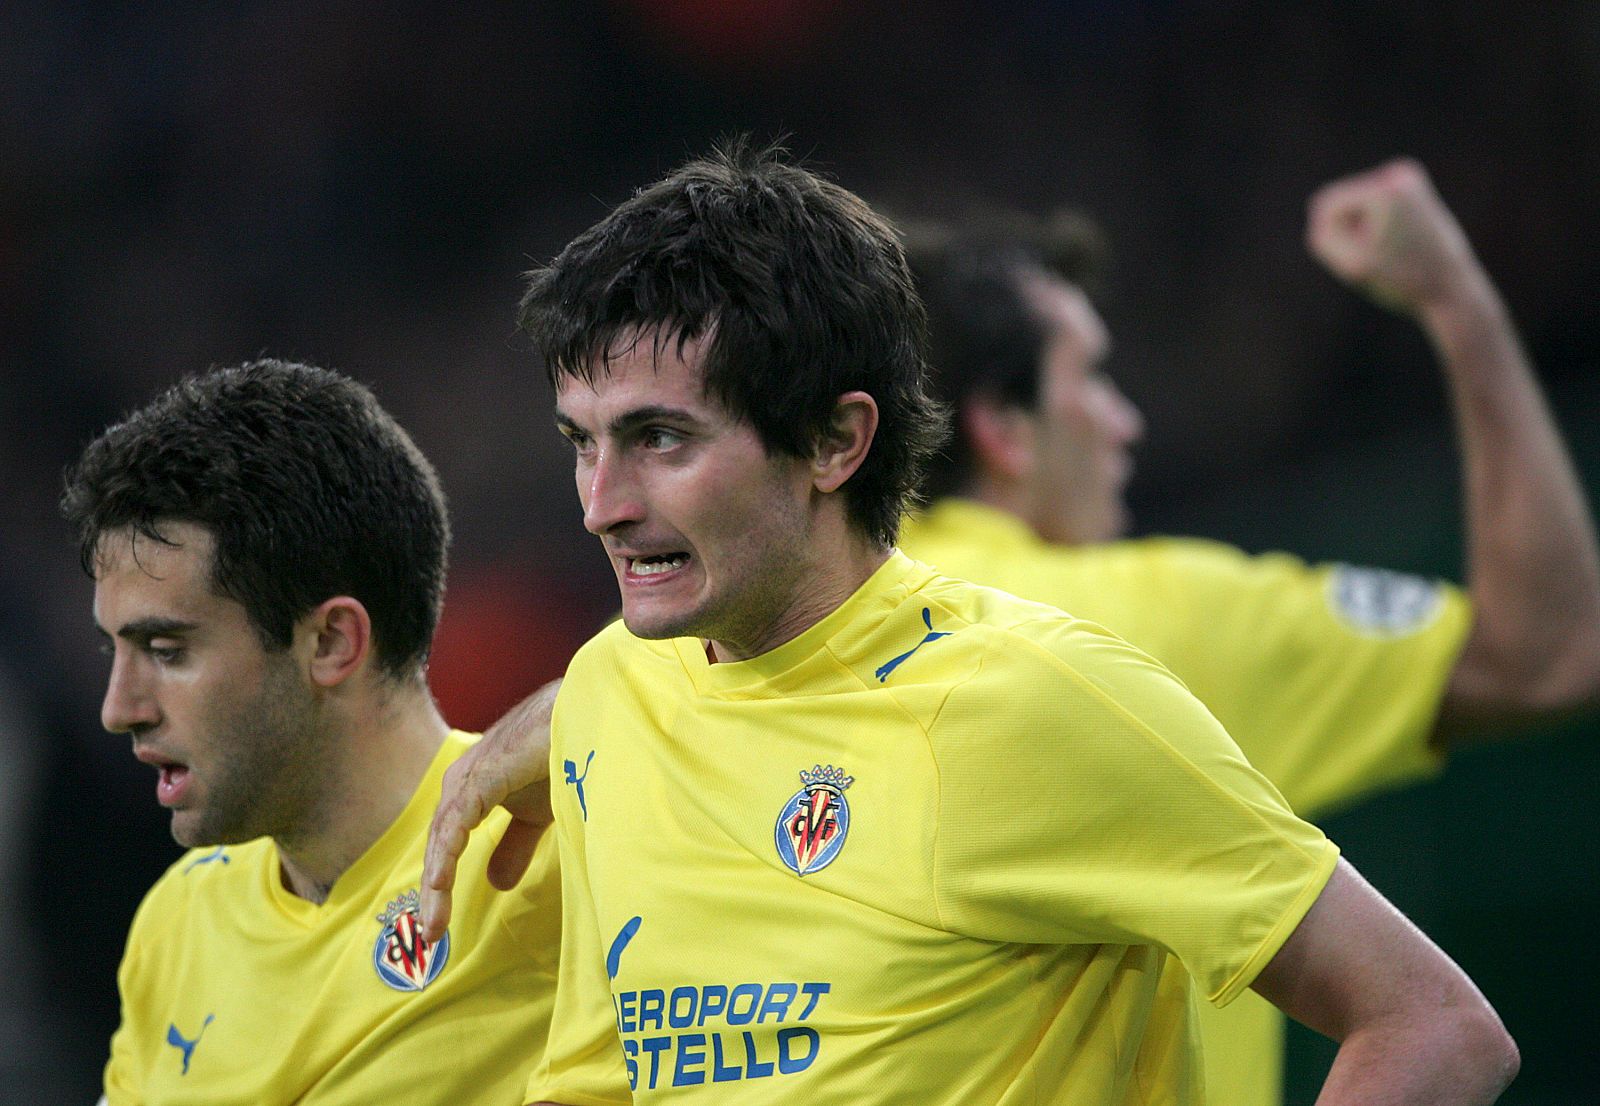 El jugador del Villareal, Joseba Liorente, celebra tras anotar un gol contra el Panathinaikos de Grecia.